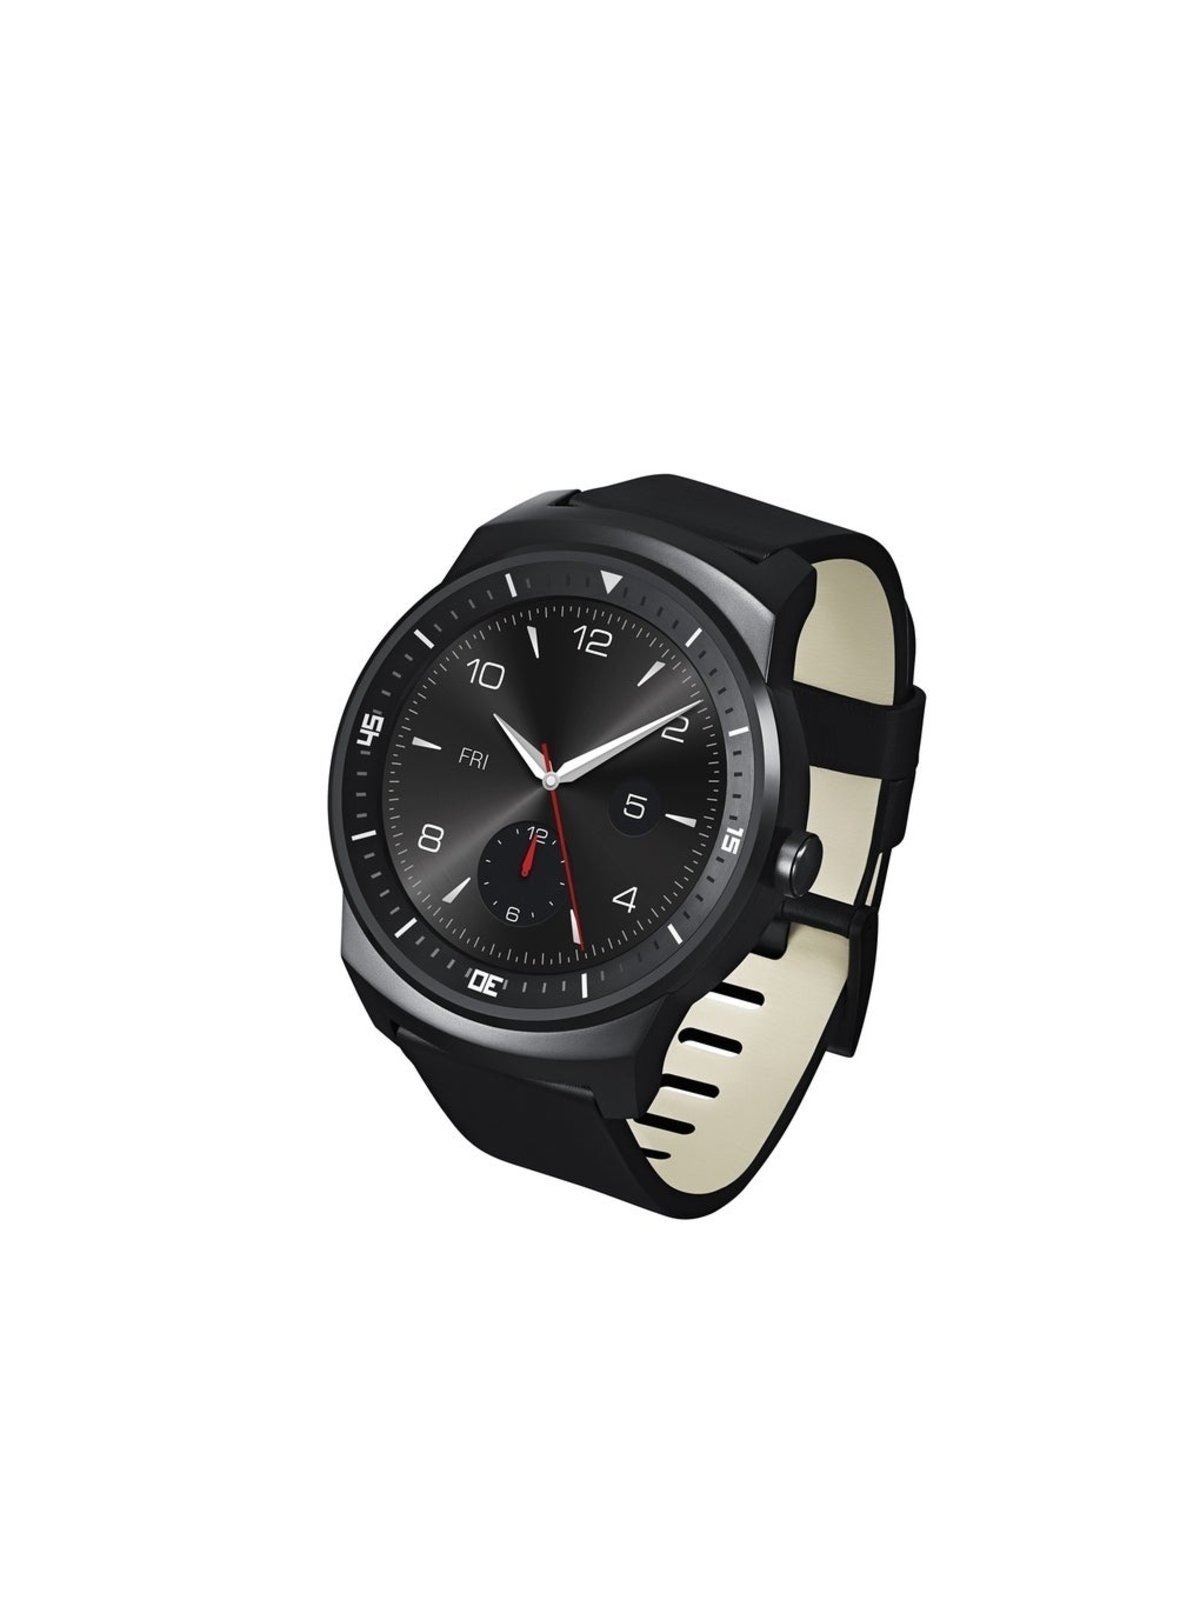 LG presenta el LG G Wach R, el smartwatch más espectacular hasta la fecha